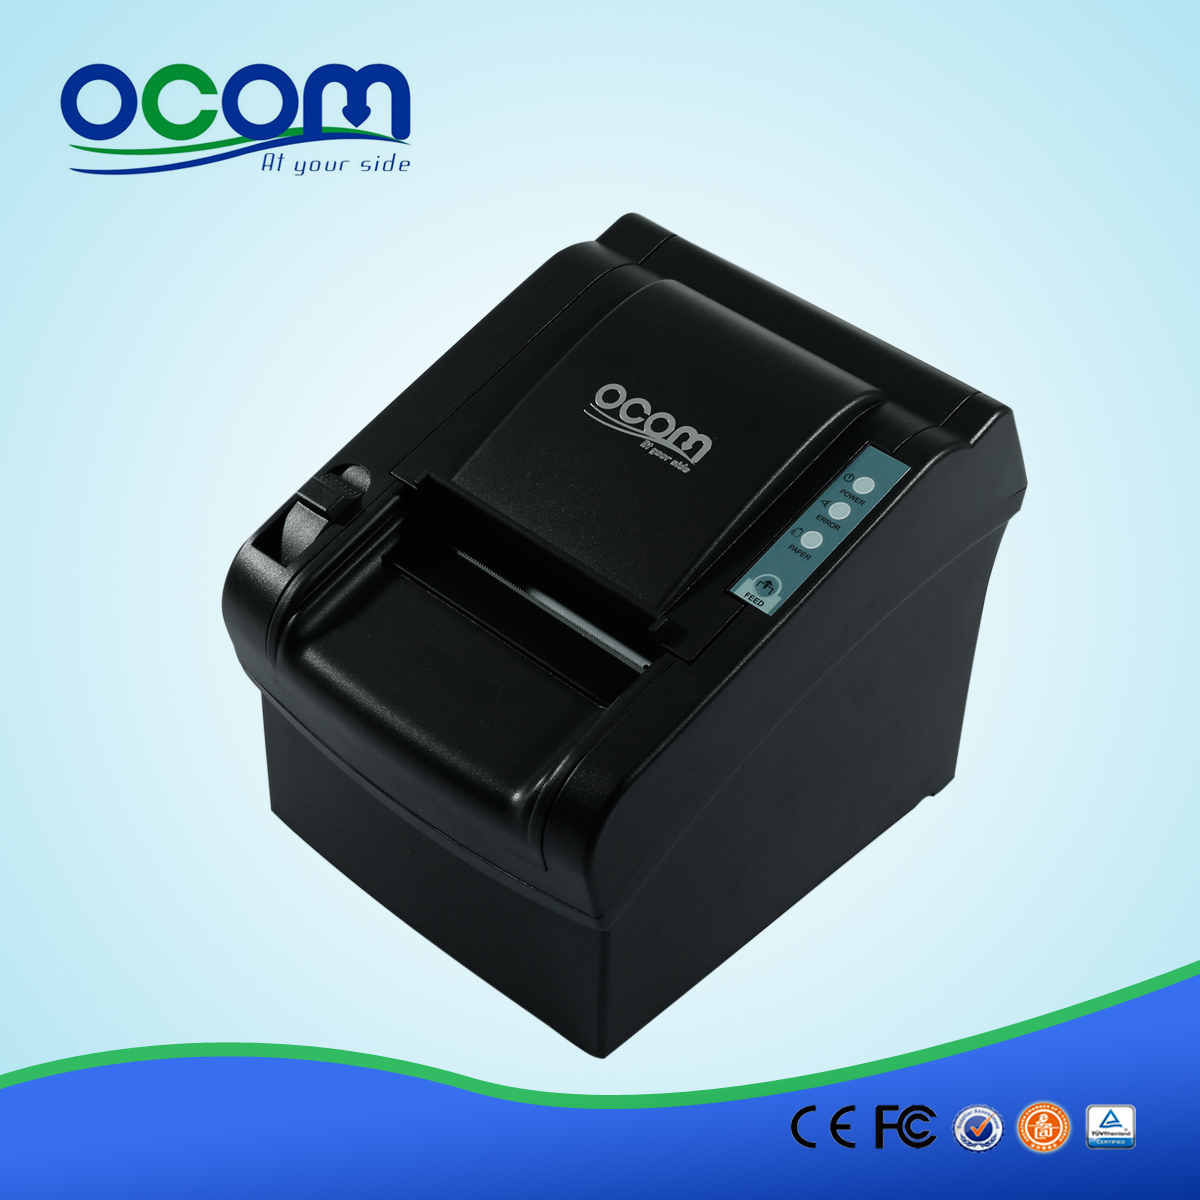 80 millimetri di taglio manuale Thermal Receipt Printer - OCPP-802